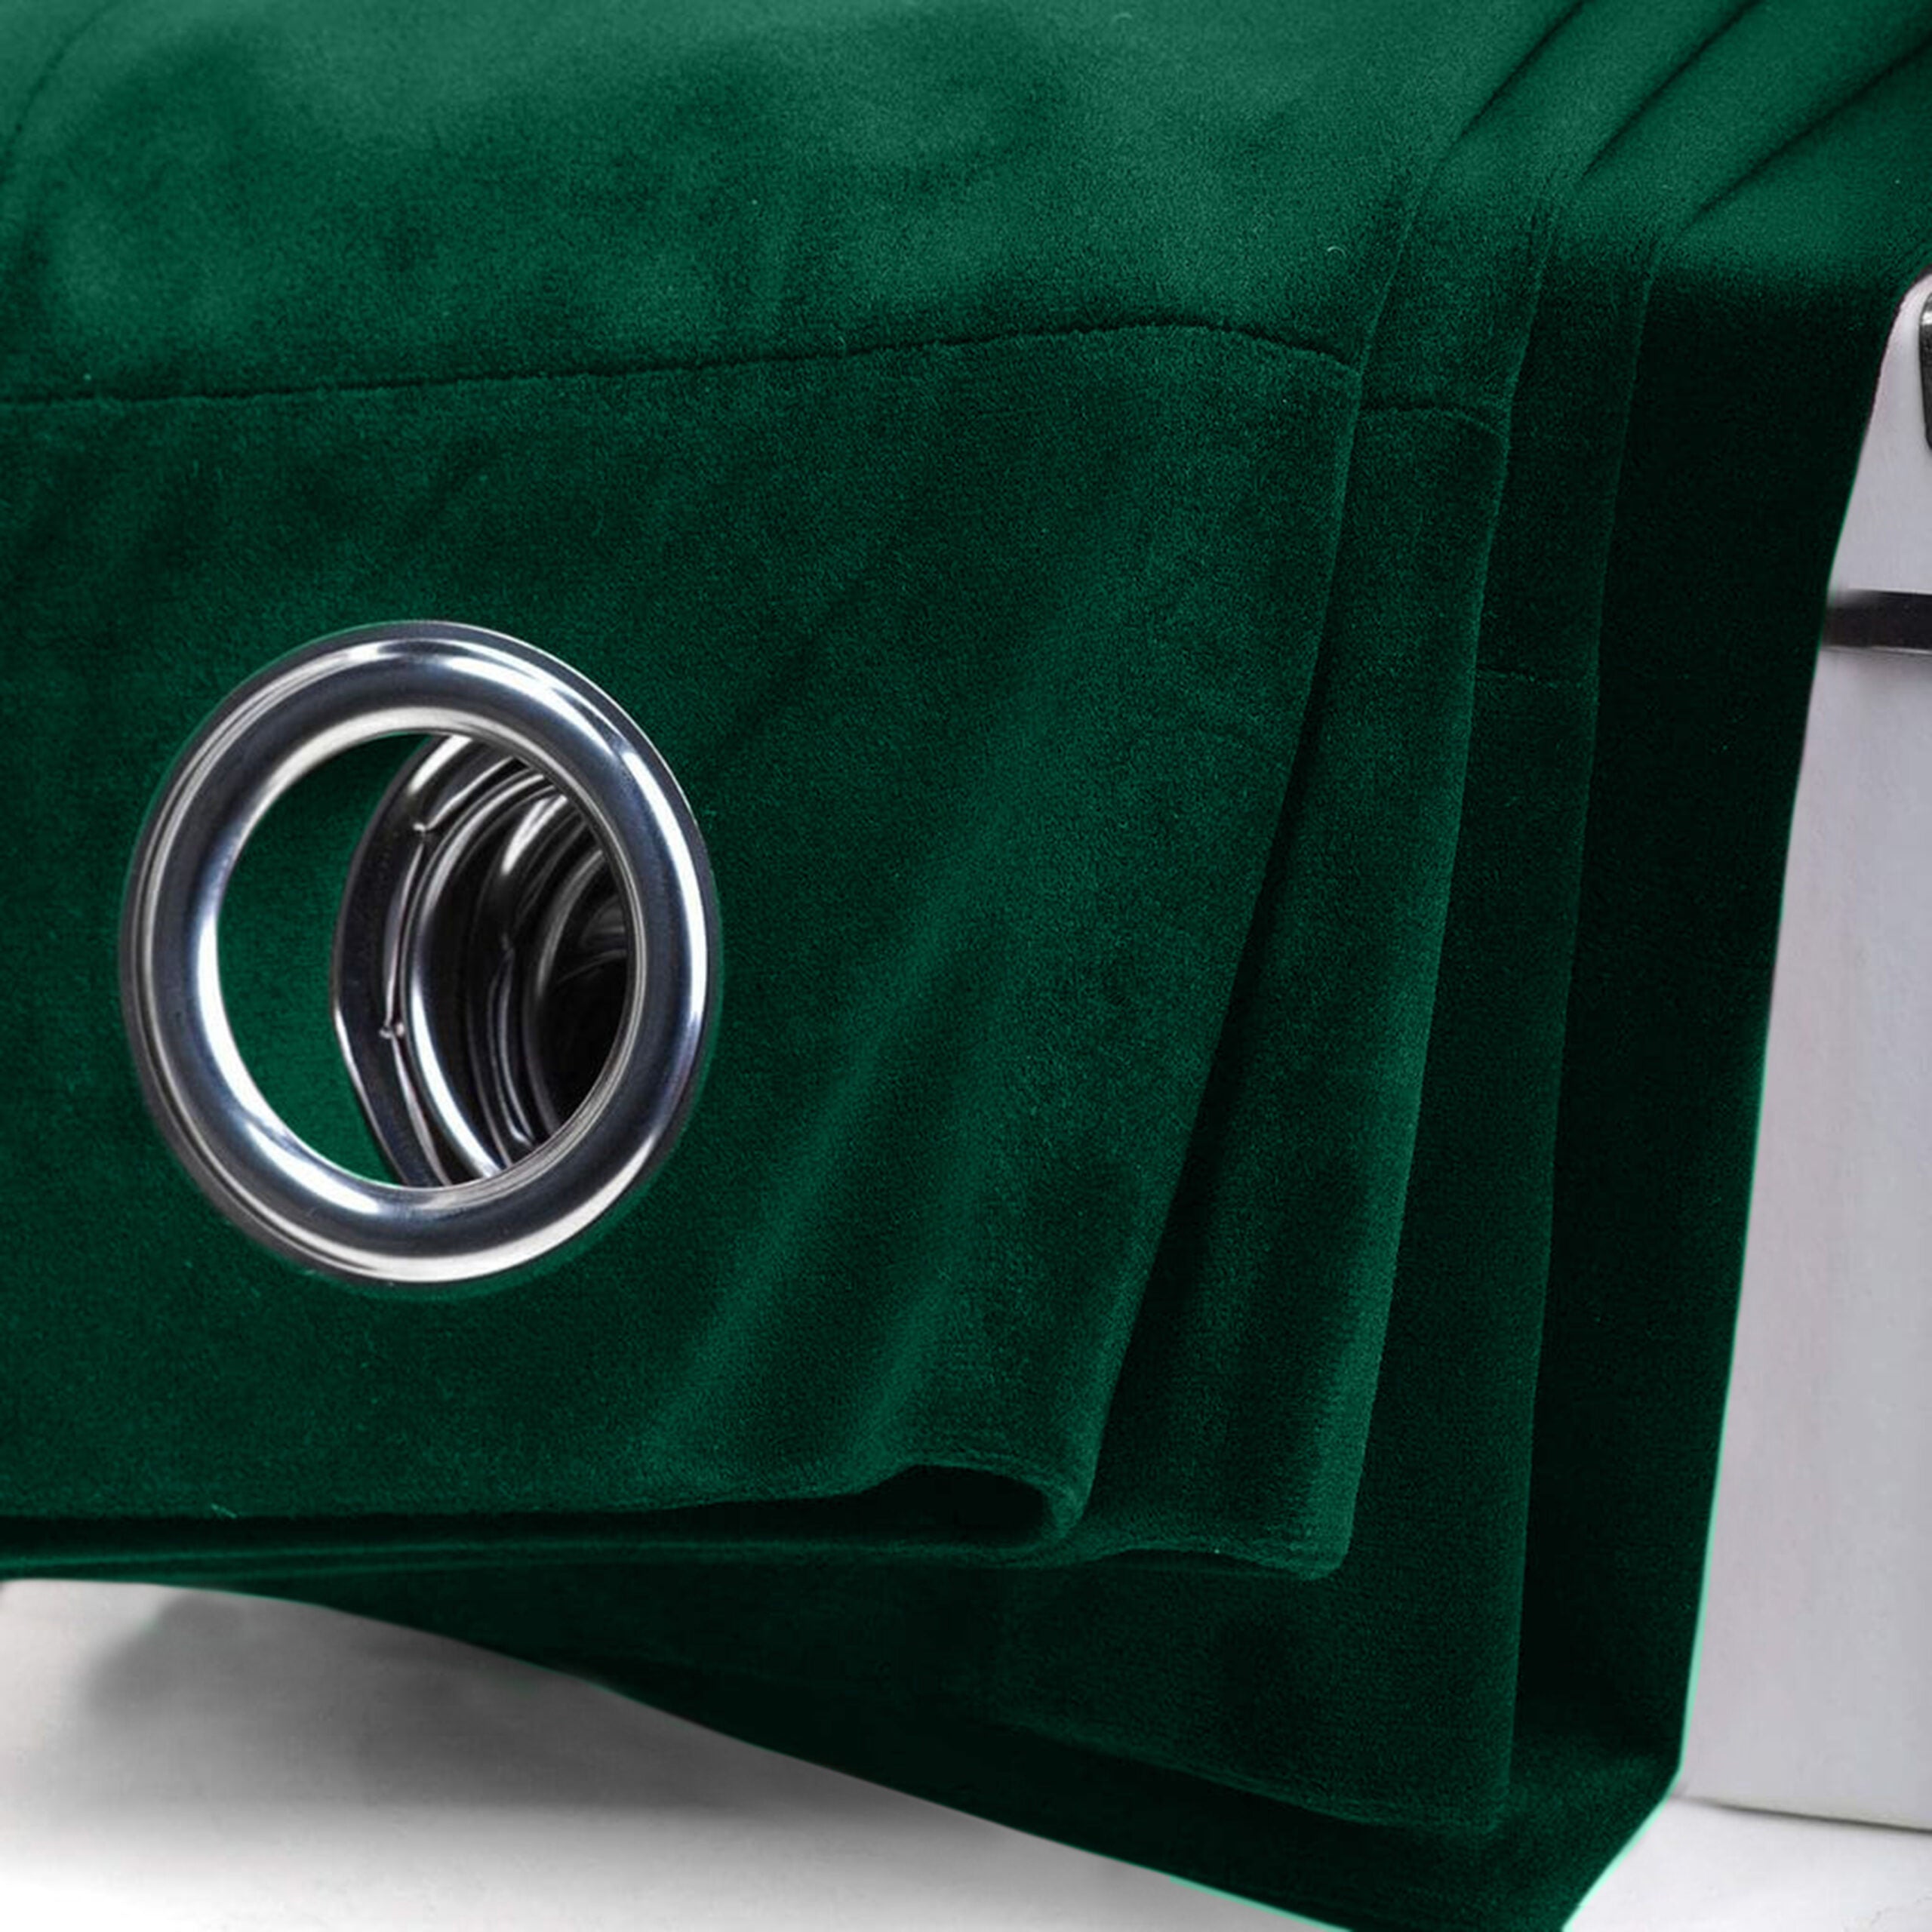 Premium Velvet Curtain  - Emerald Green